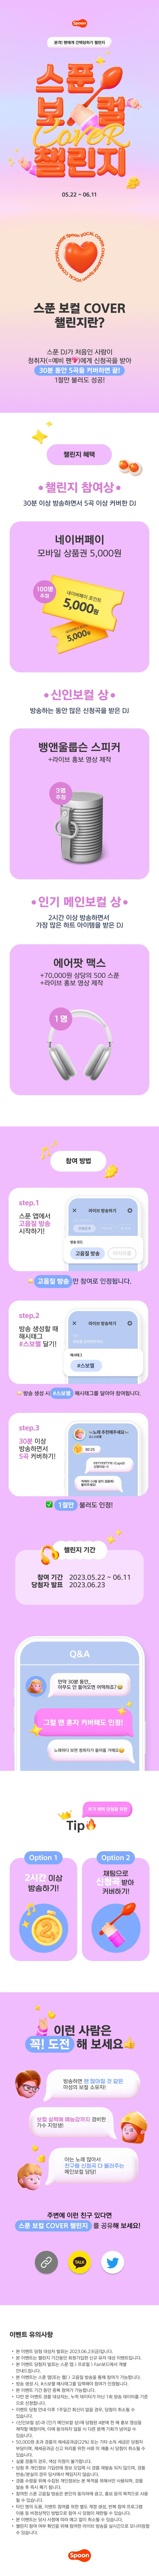 스푼 보컬 COVER 챌린지_이벤트 페이지_외부배포용(1mb).png.jpg